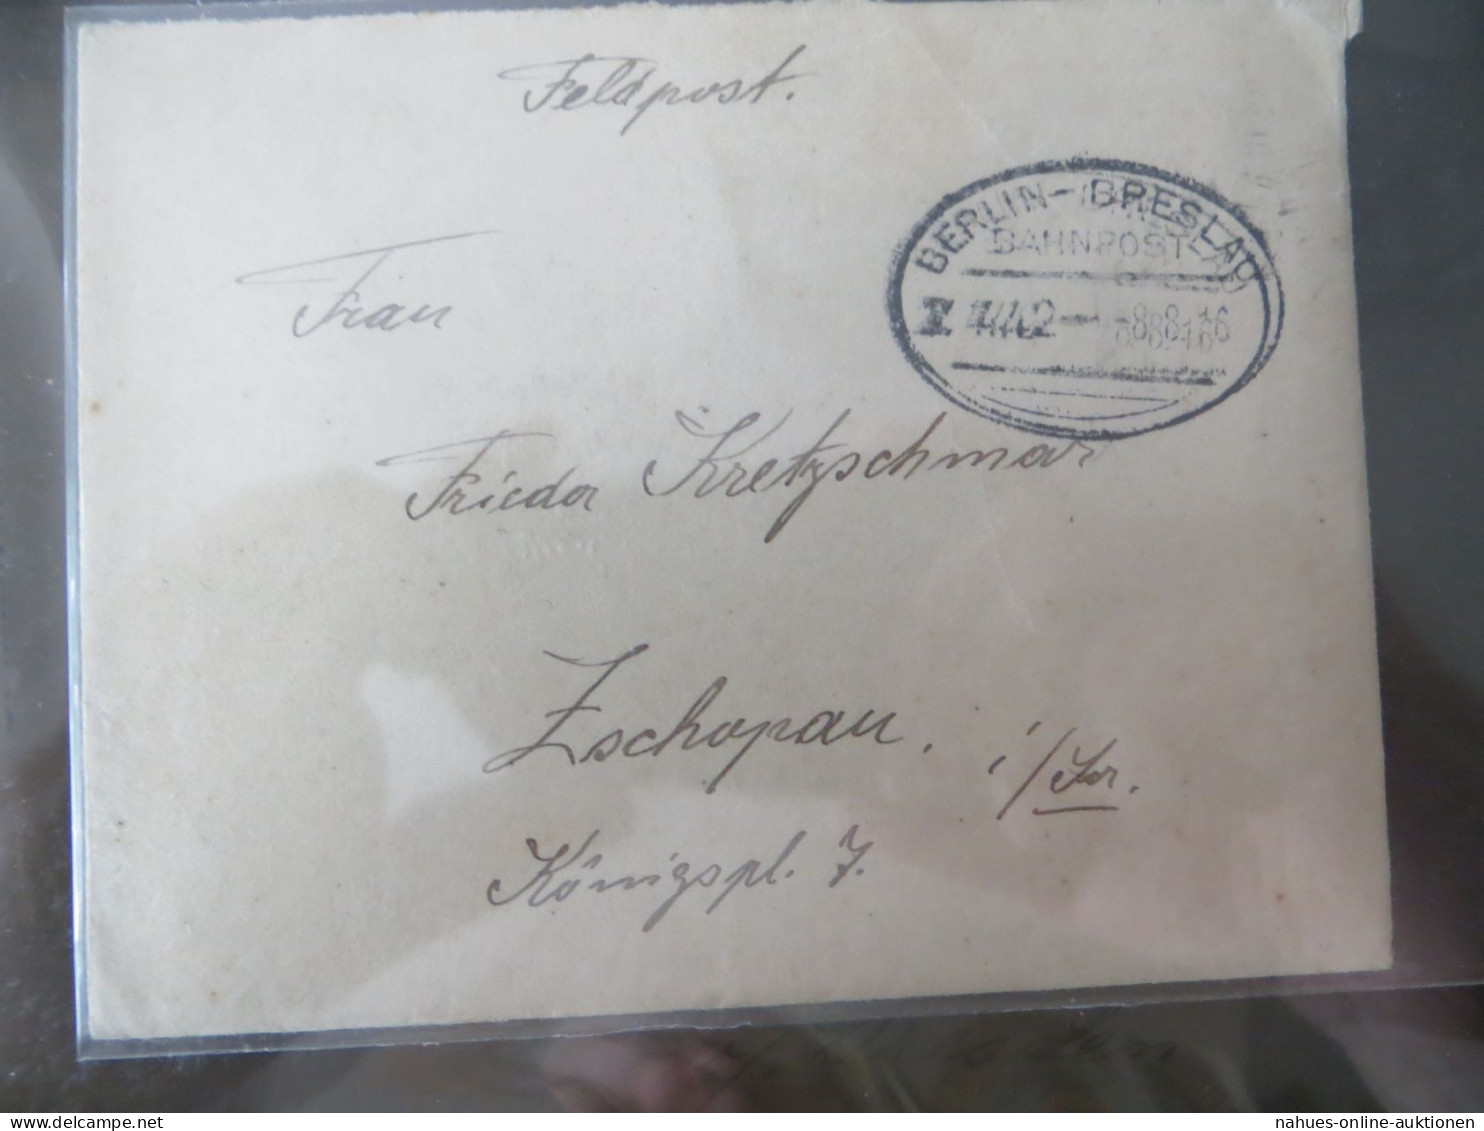 Bahnpost schöne Nachlass Sammlung Deutsches Reich ab 1880 Festpreis 70,00